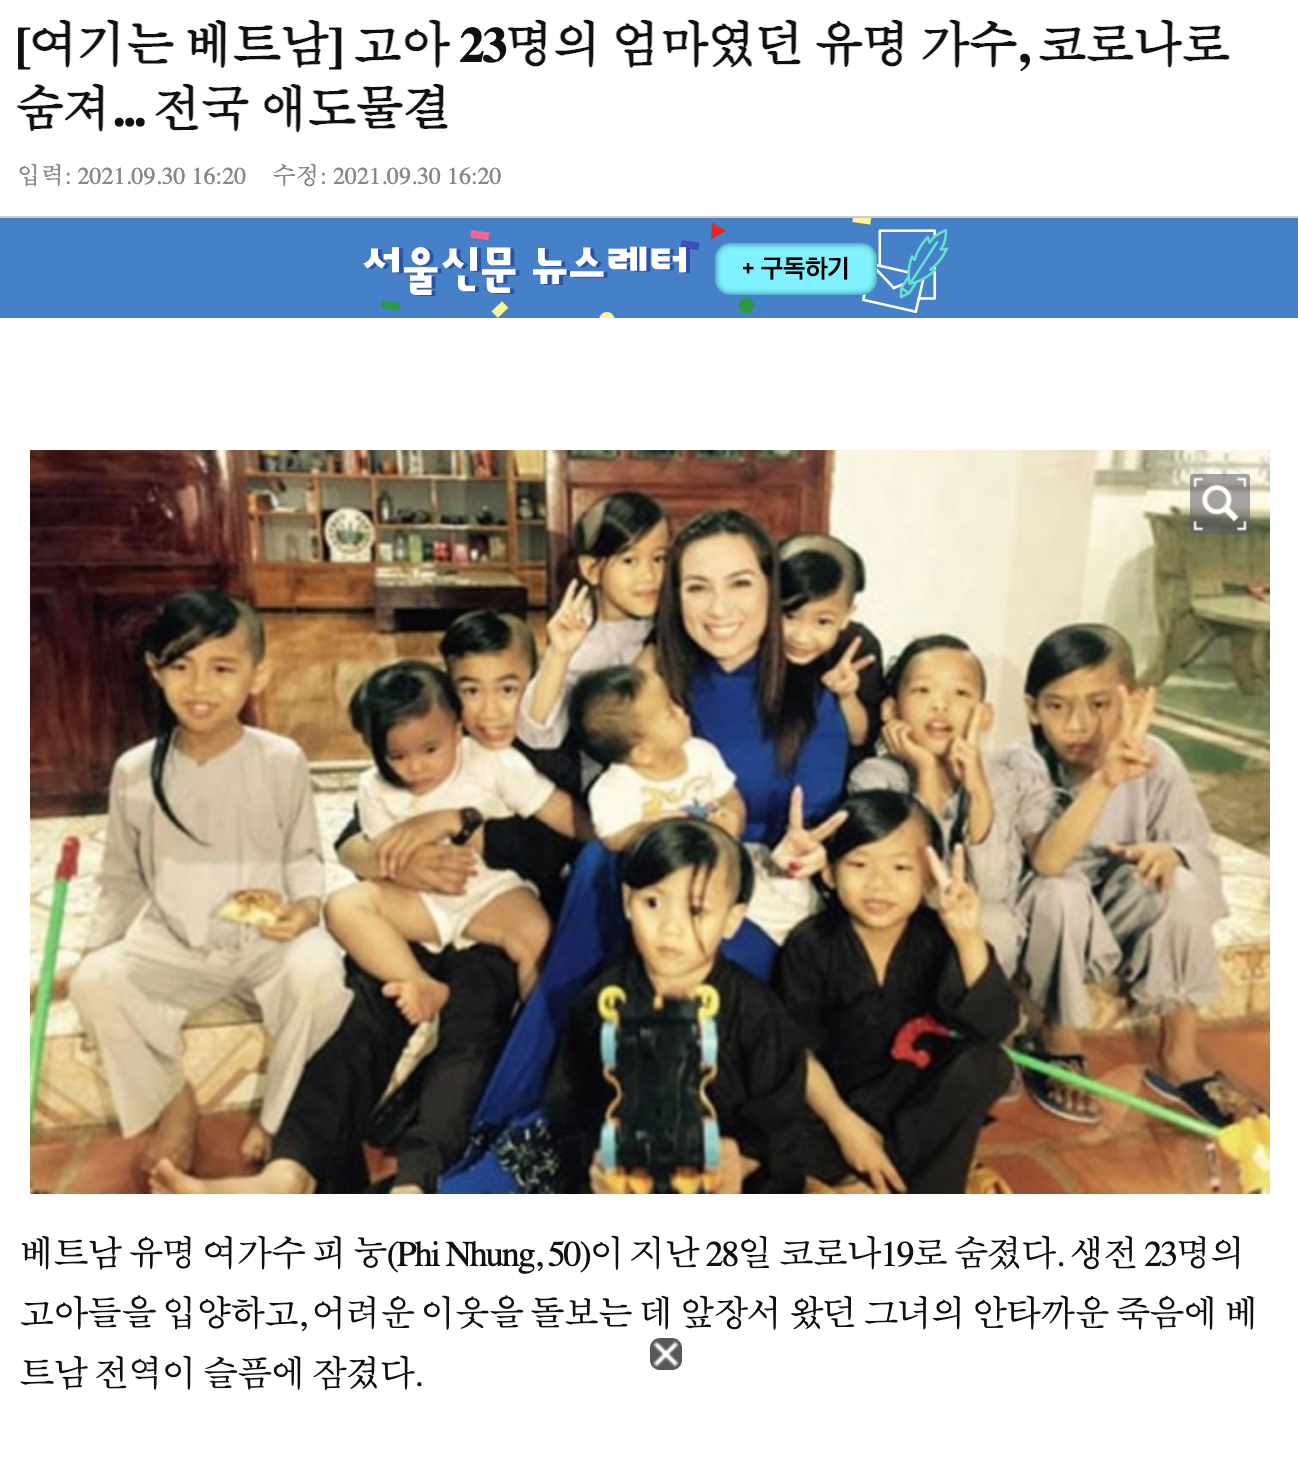 Trang tin Hàn Quốc đề cập đến sự ra đi của Phi Nhung vào ngày 28/9 vừa qua